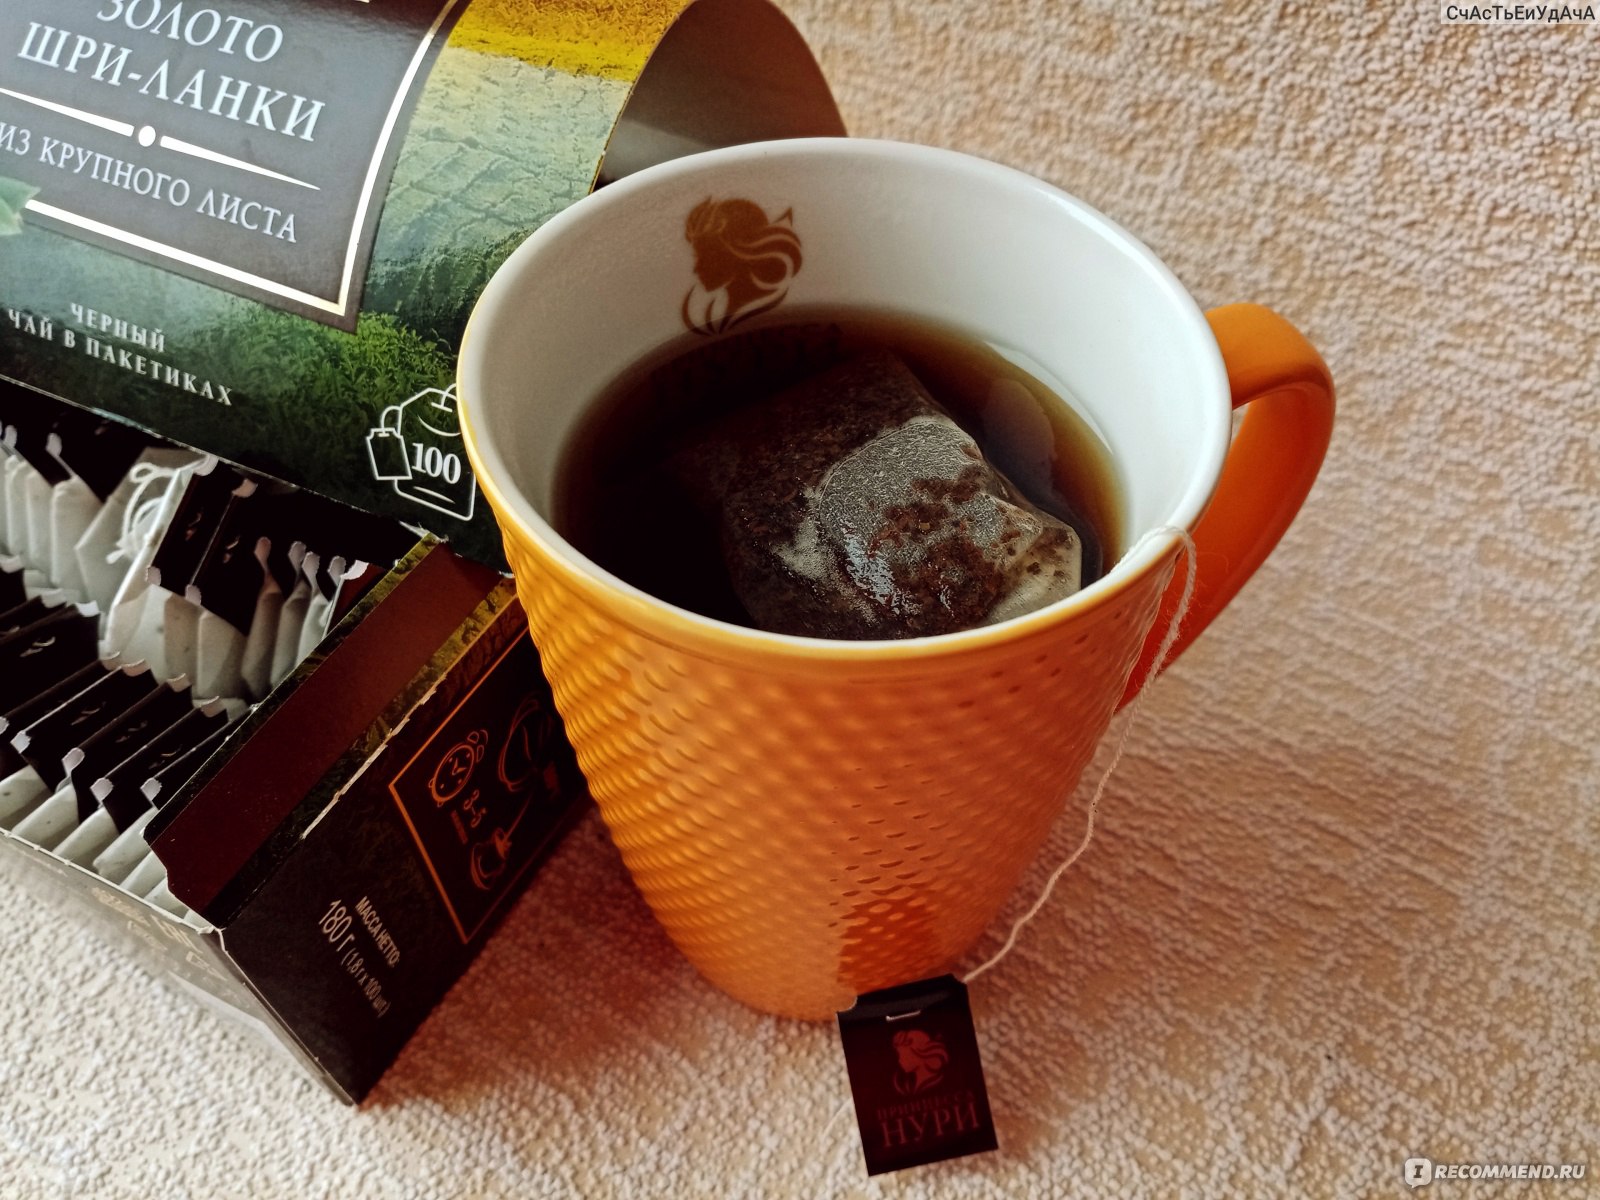 Чай черный Принцесса Нури  "ЗОЛОТО ШРИ-ЛАНКИ"  байховый цейлонский, в пакетиках для разовой заварки фото